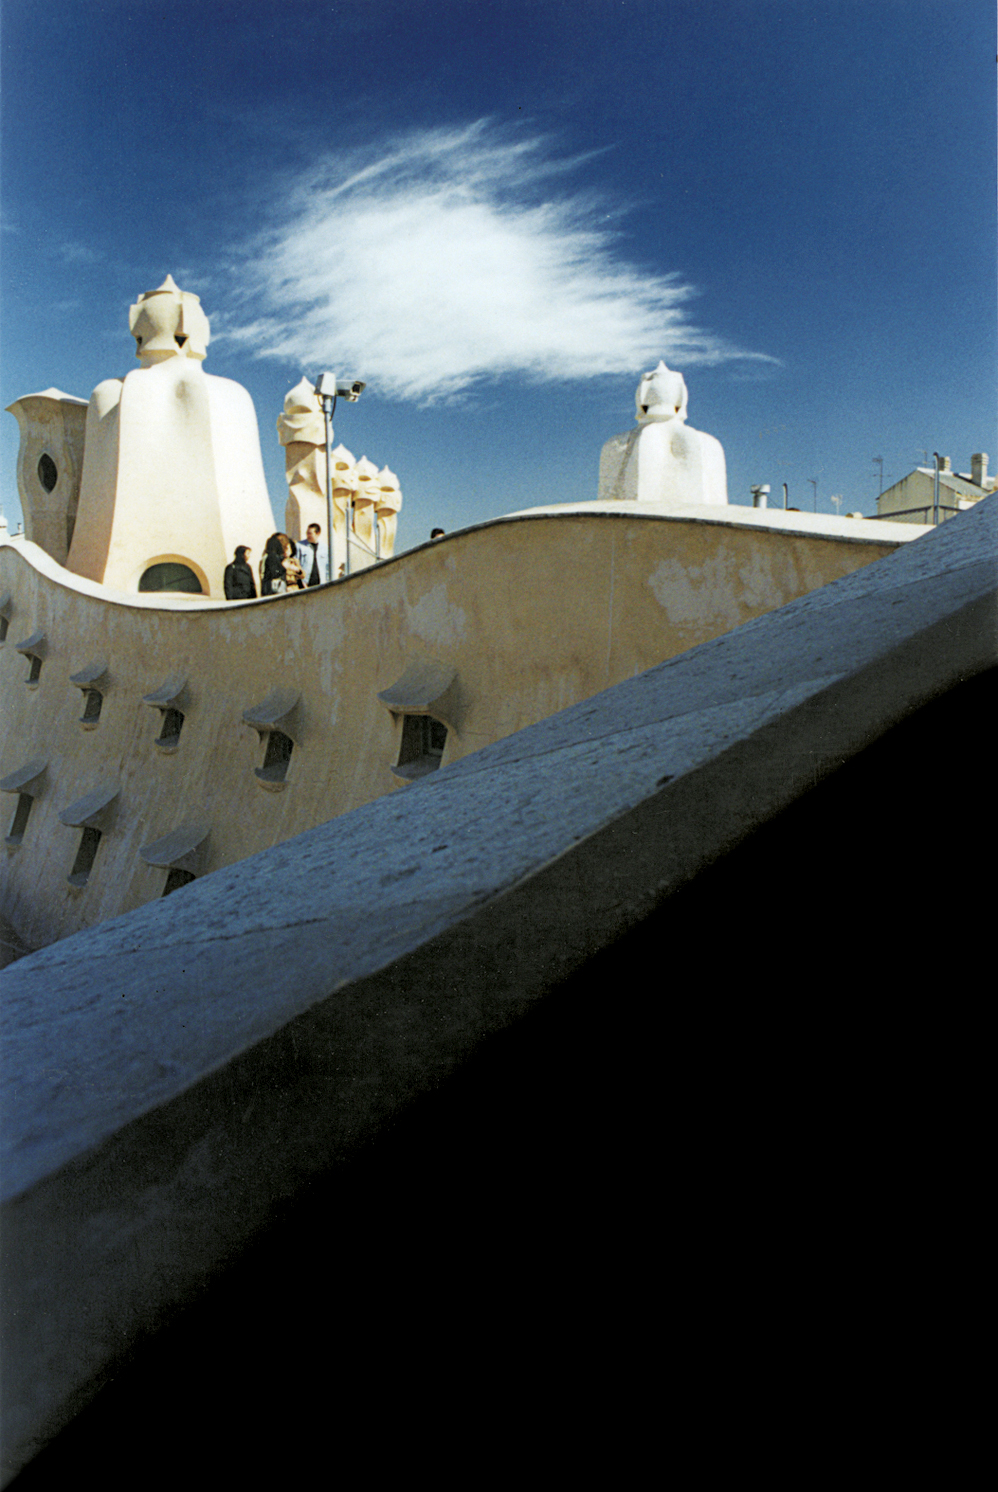 Gaudi's rooftop